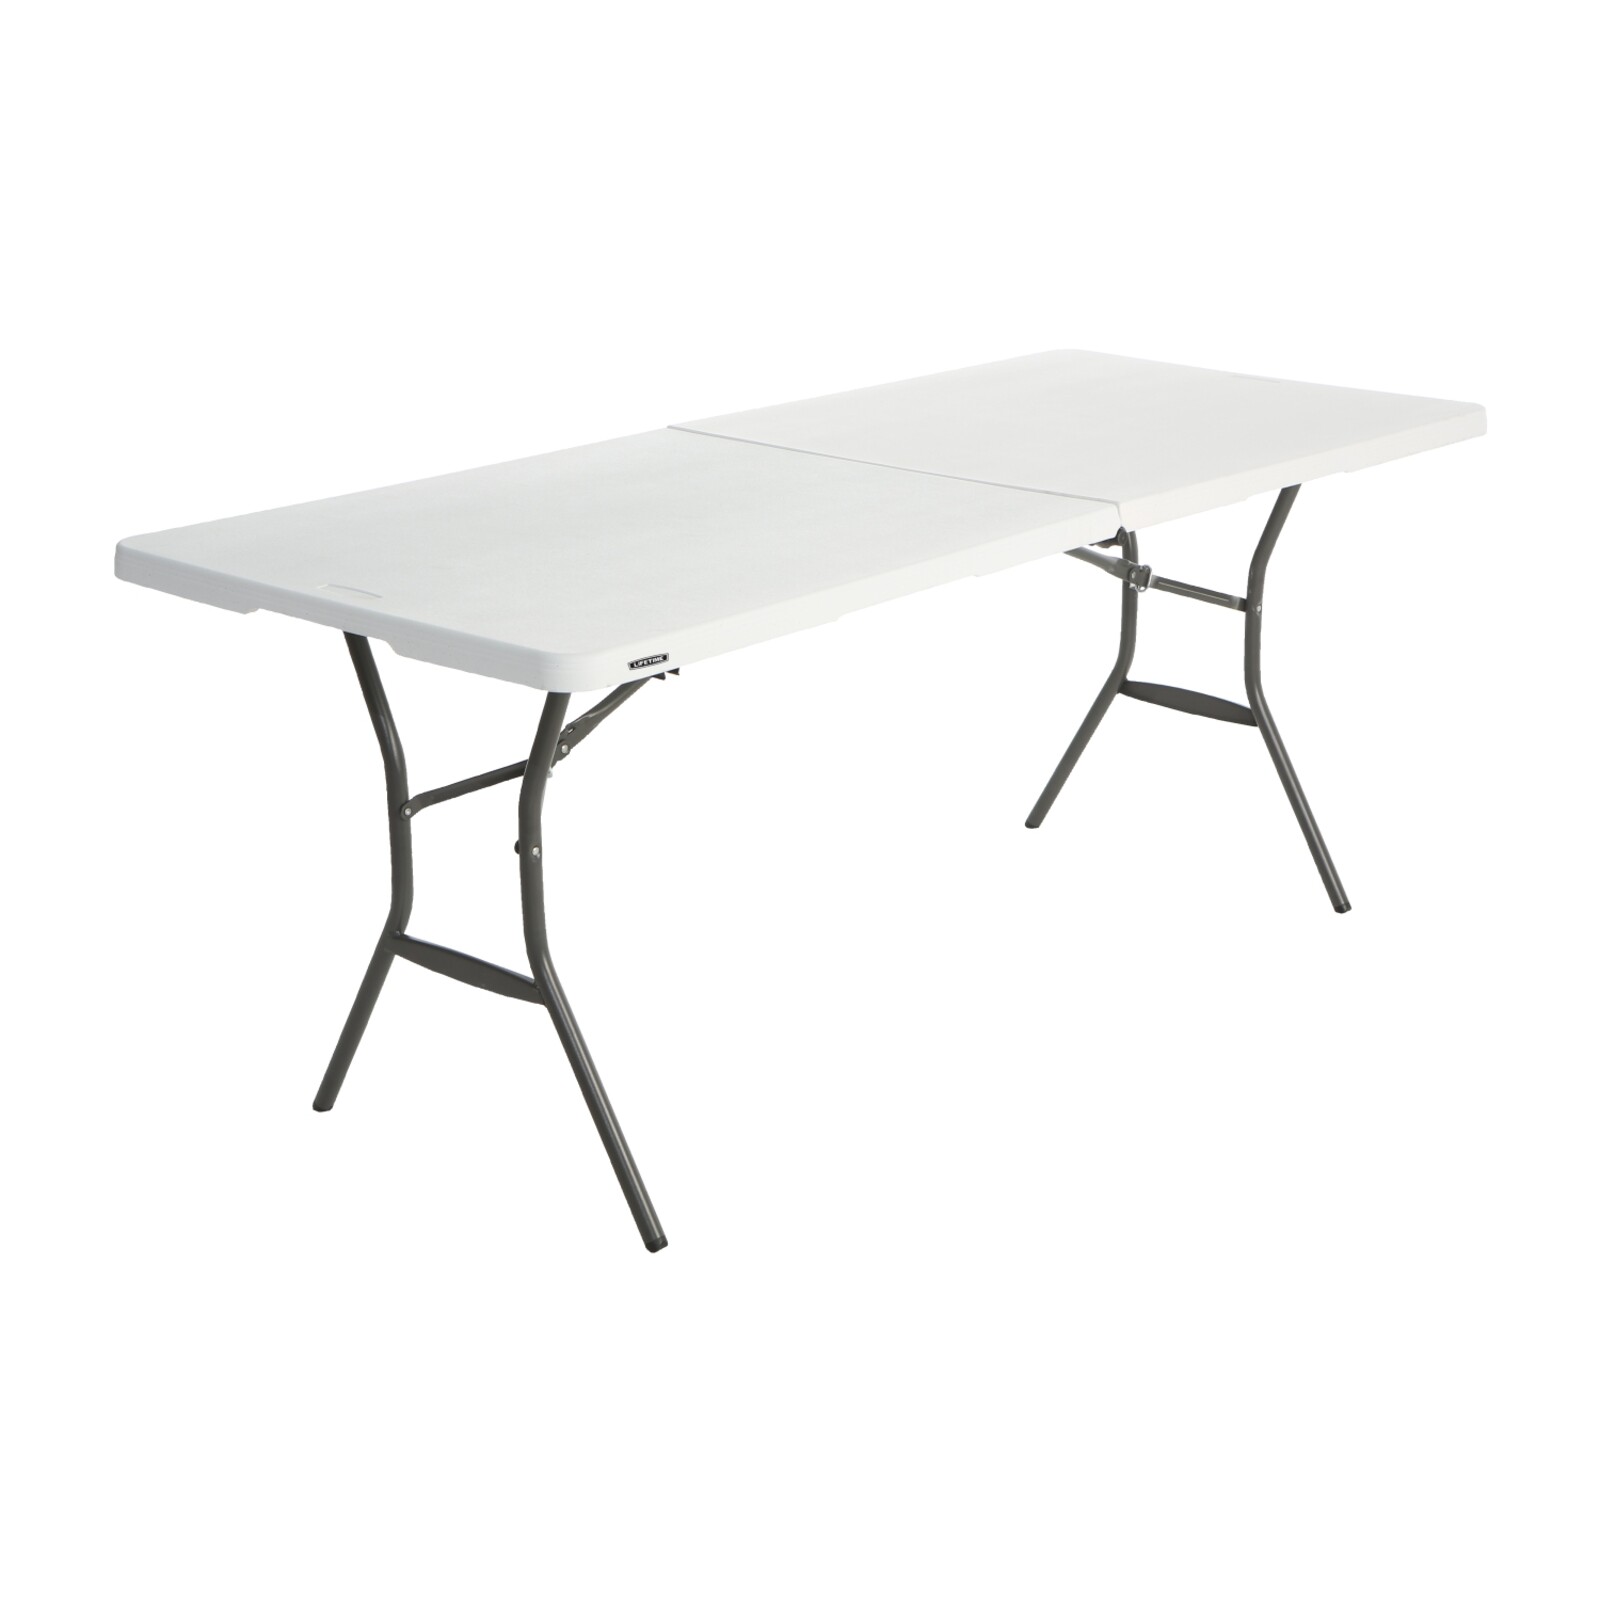 Skládací stůl 180 cm LIFETIME 80333 / 80471 LG1022